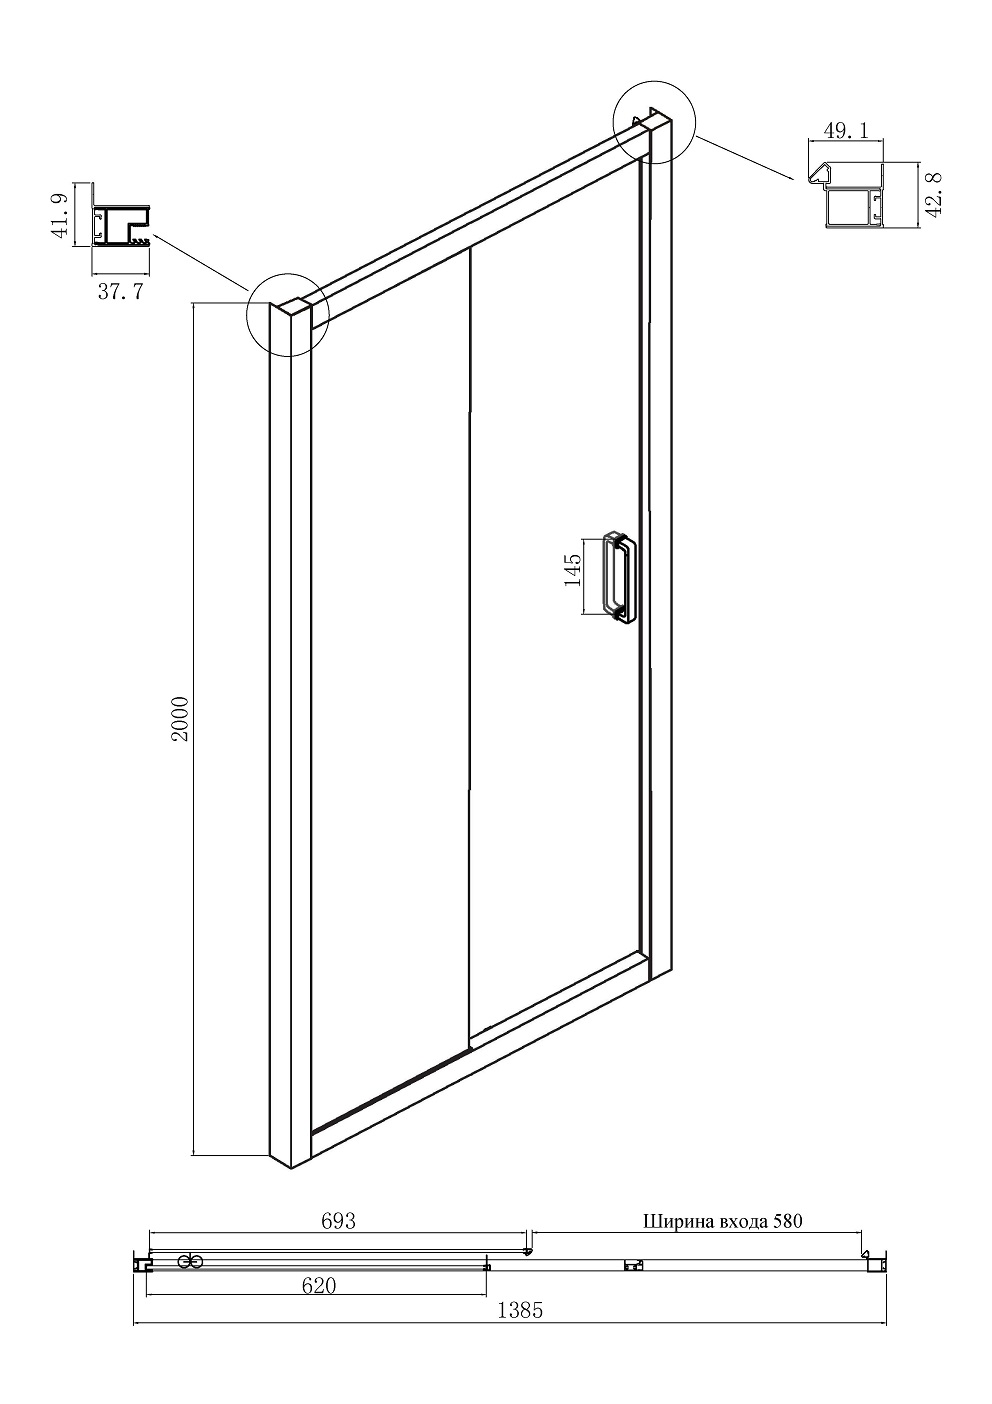 Душевая дверь Ambassador Forsa 140x200 17021120AX прозрачная, хром